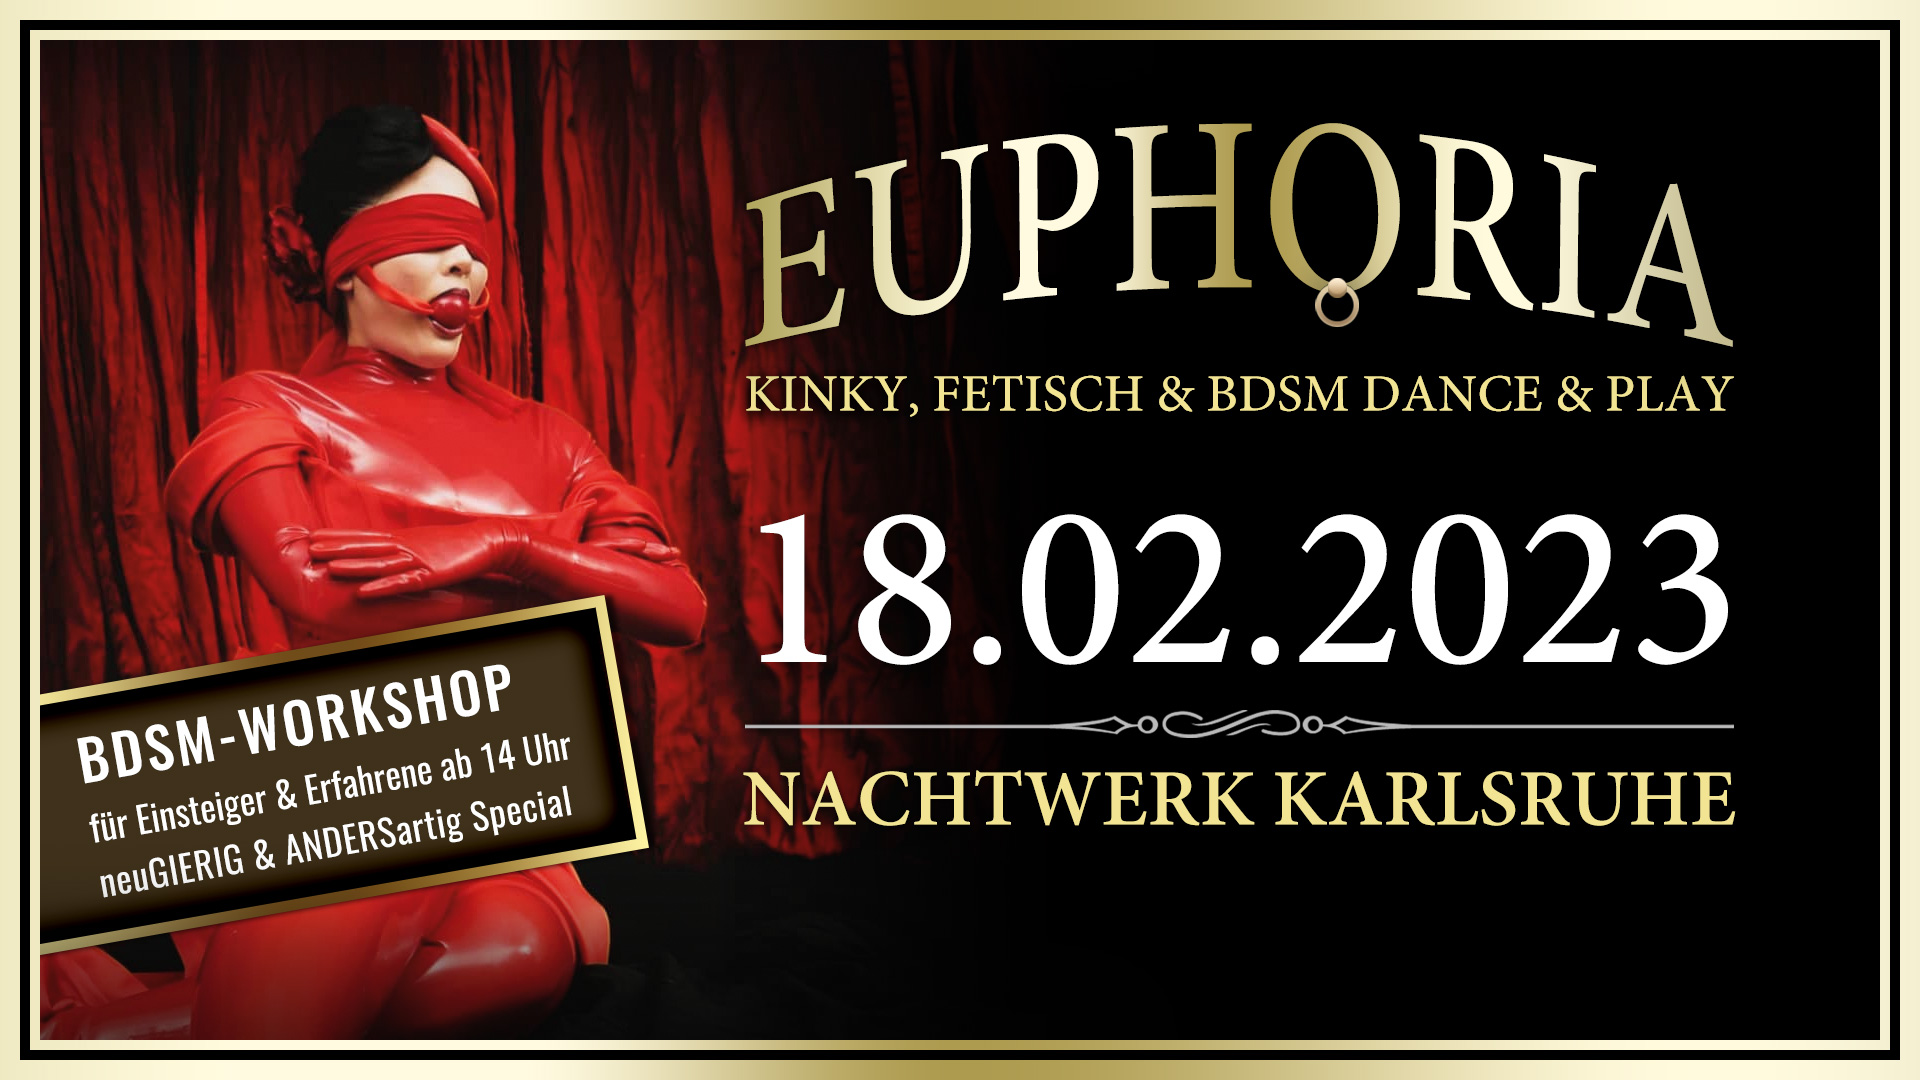 EUPHORIA » Die Kinky, Fetisch und BDSM Dance & Play Party in Karlsruhe von und mit DJ GILLIAN. BDSM Workshop für Einsteiger und Interessierte ab 14 Uhr.